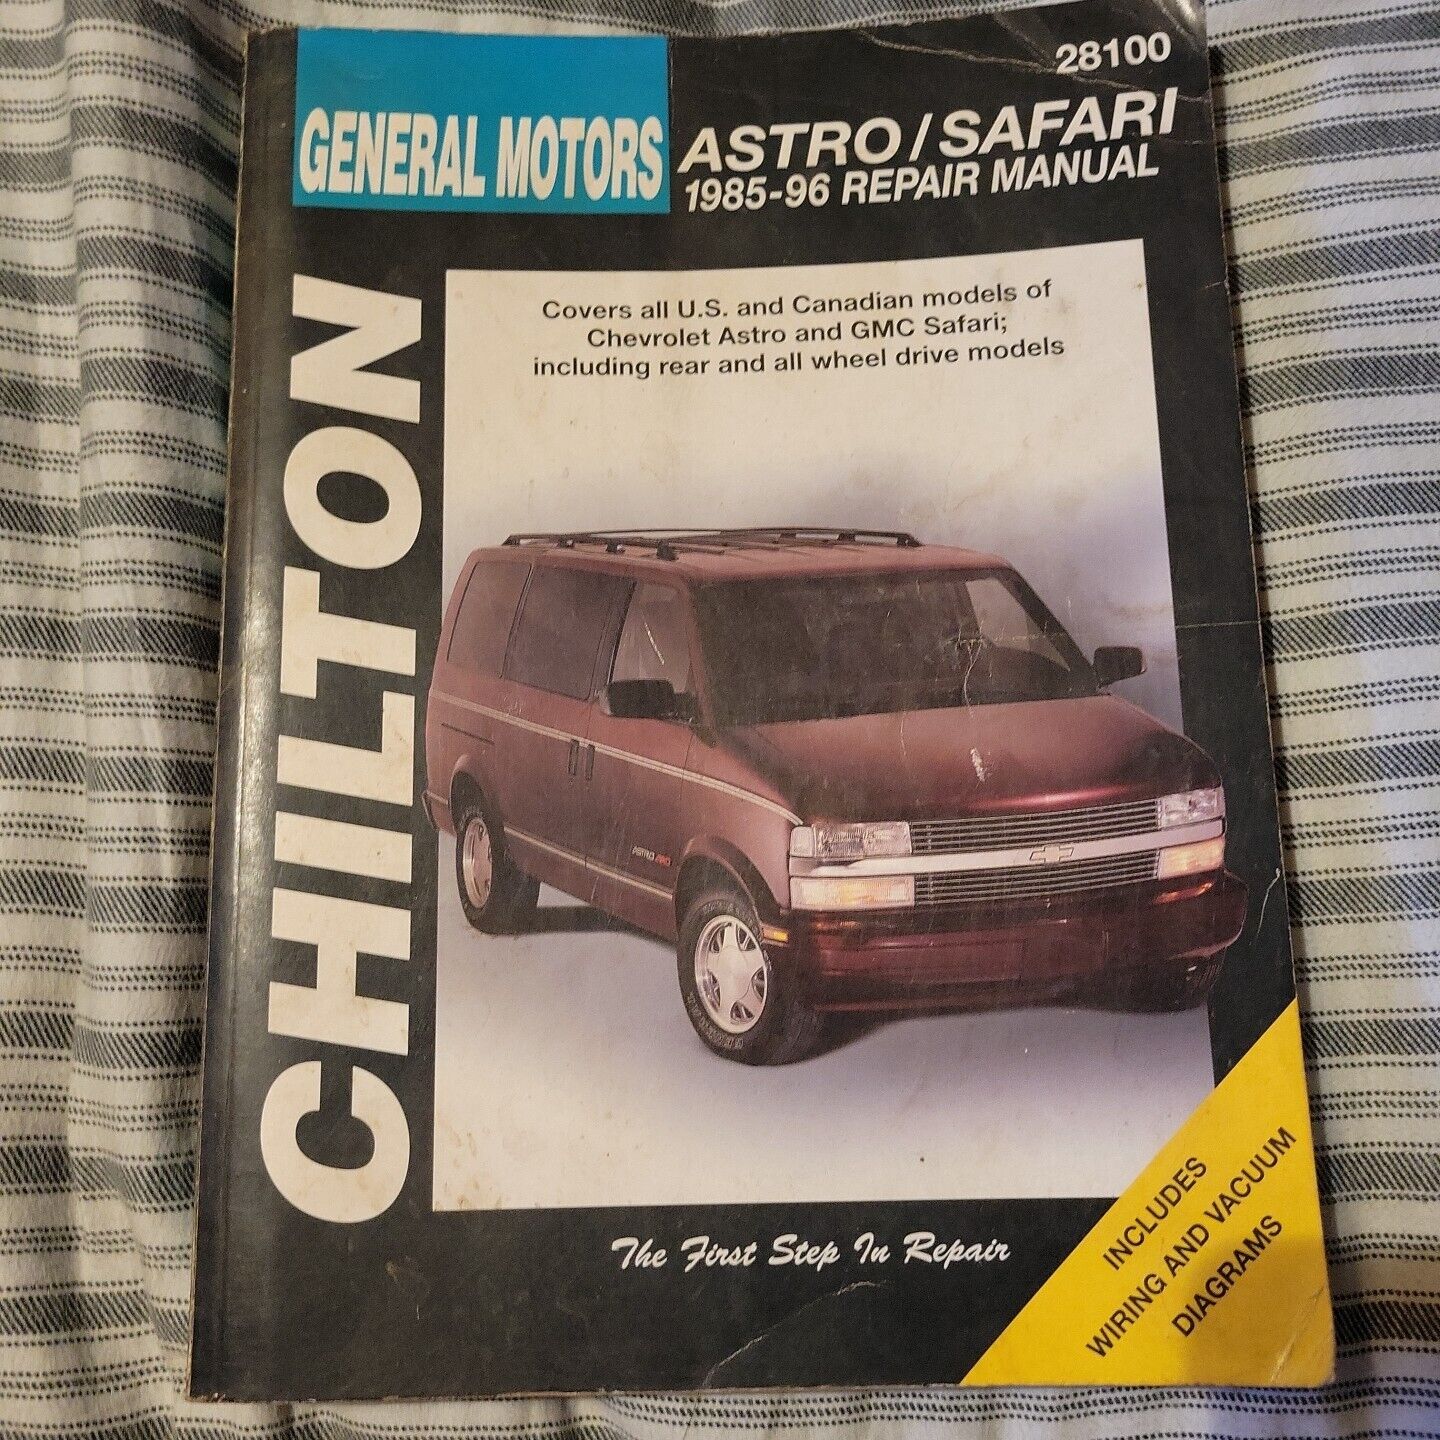 Chilton's Repair Manual General Motors Astro/Safari 1985-96